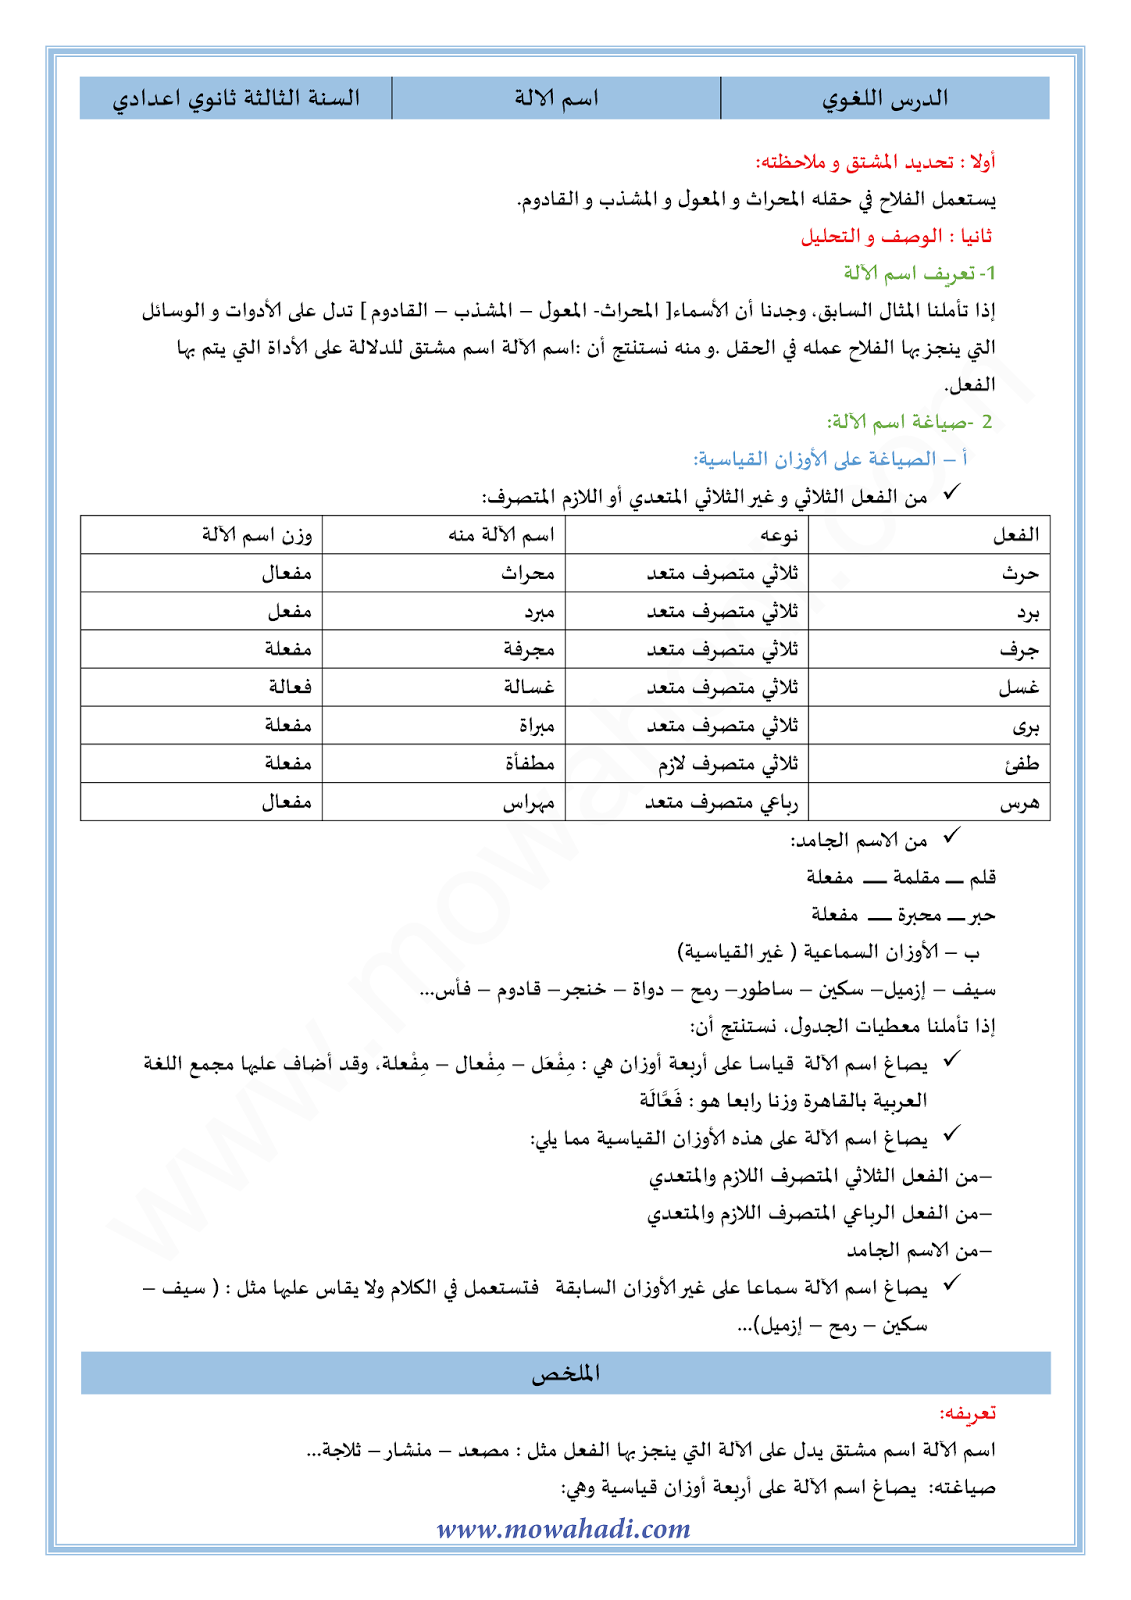 الدرس اللغوي اسم الآلة للسنة الثالثة اعدادي في مادة اللغة العربية 4-cours-dars-loghawi3_001